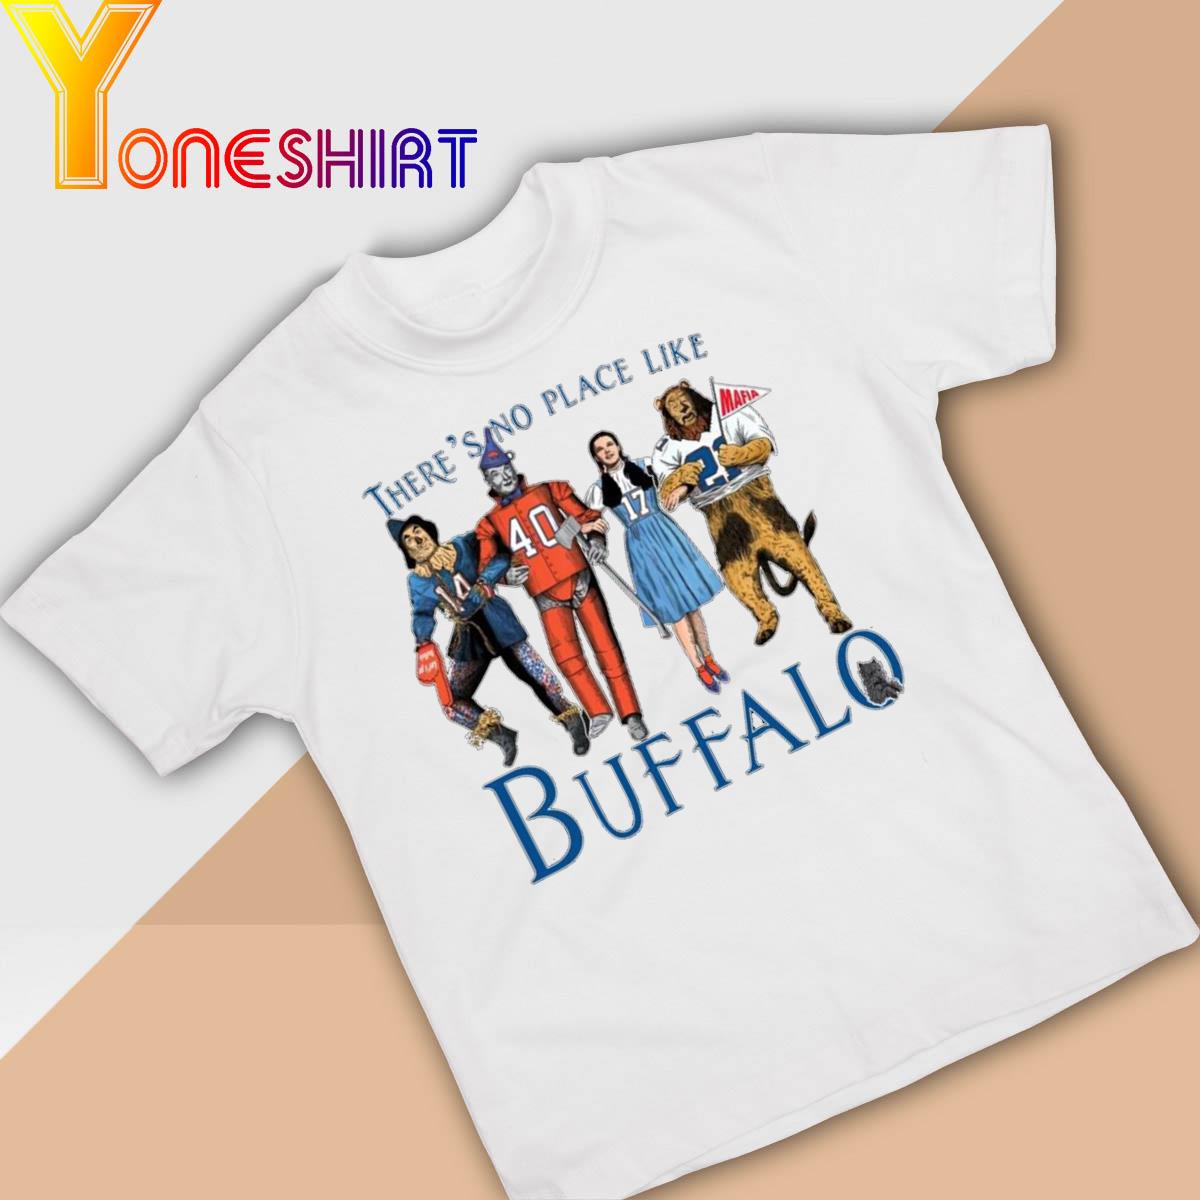 Josh Allen Wizard of Oz Buffalo Bills shirt